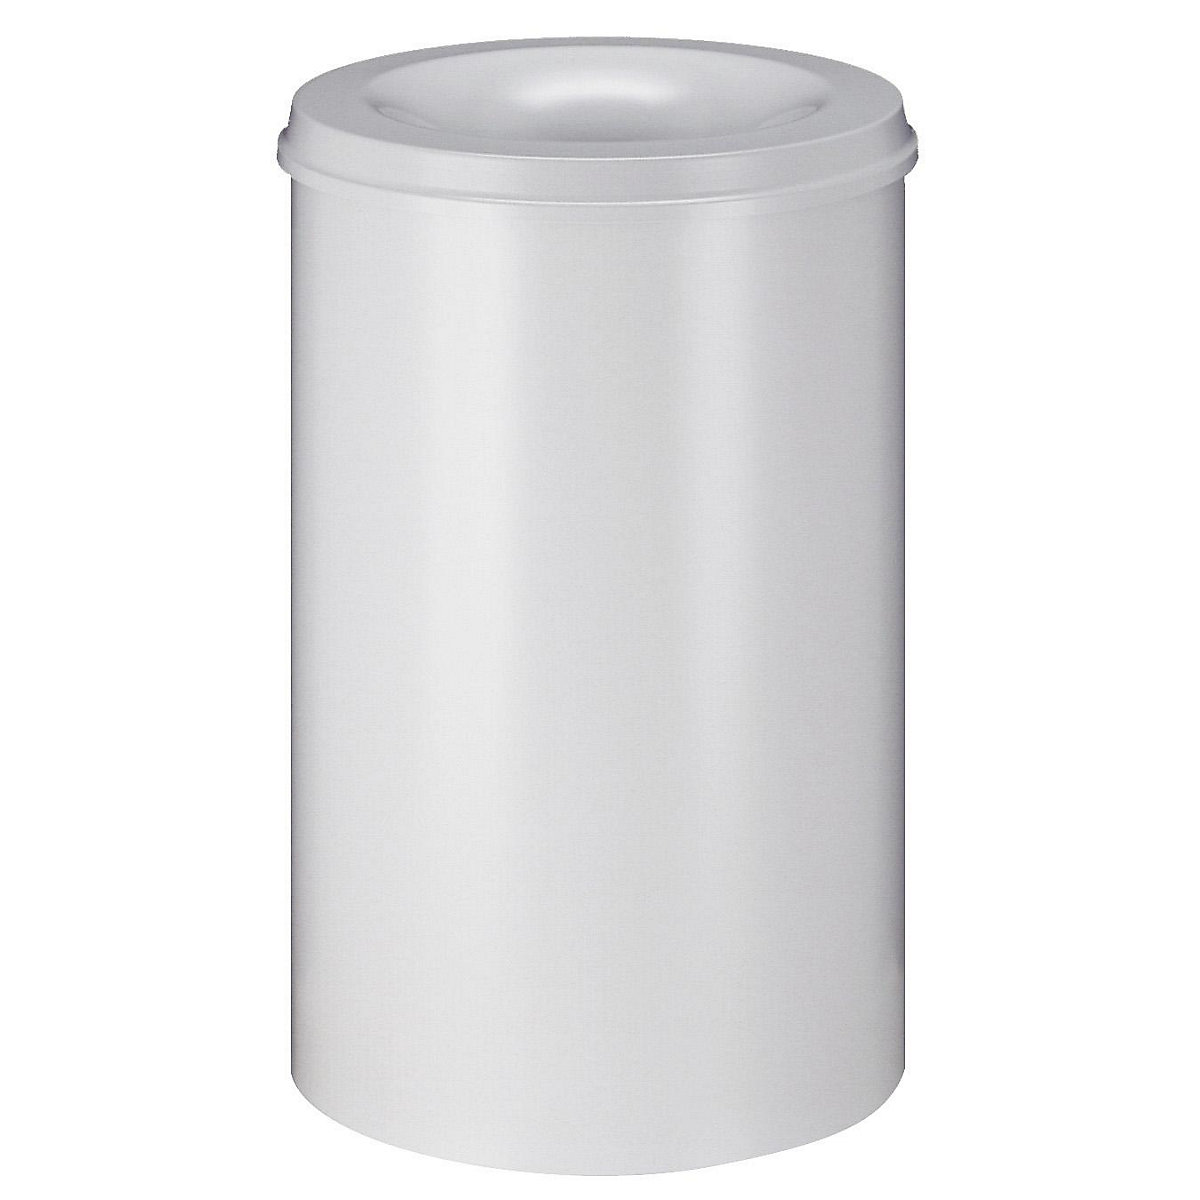 Corbeille à papier auto-extinguible, capacité 110 l, h x Ø 720 x 470 mm, corps blanc / étouffoir blanc